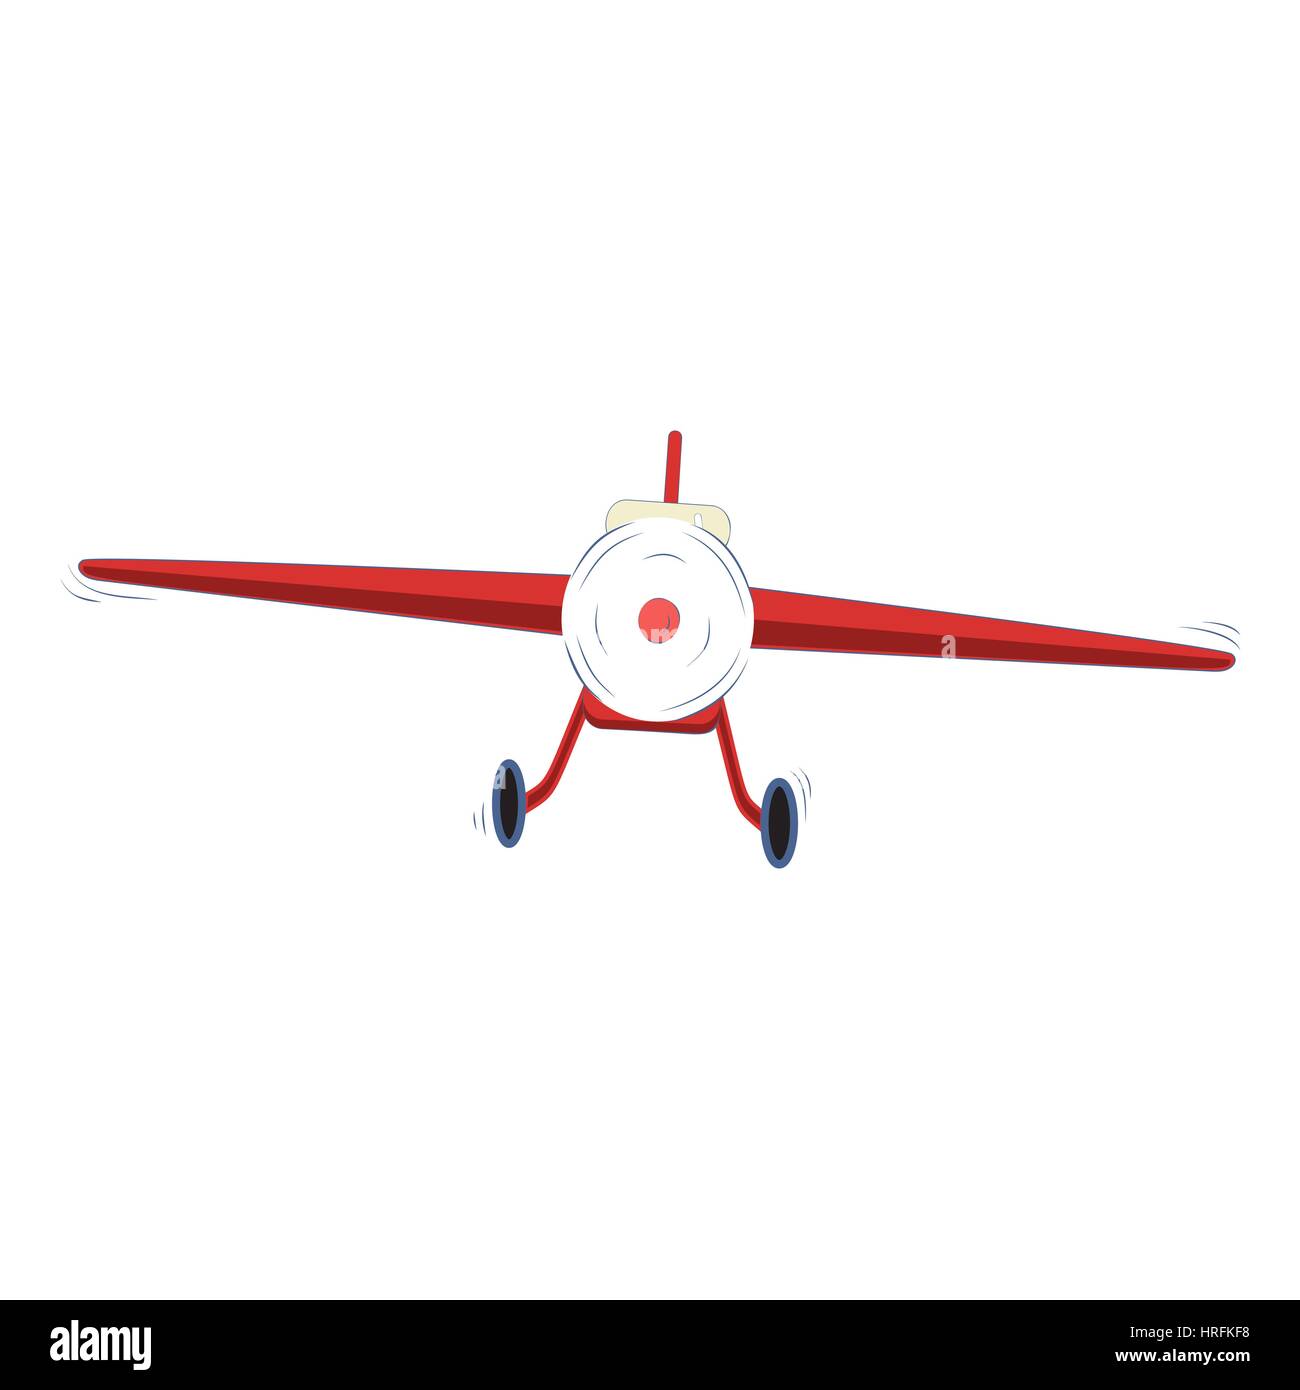 Single engine propelled light plane on white background, vector illustration Stock Vector